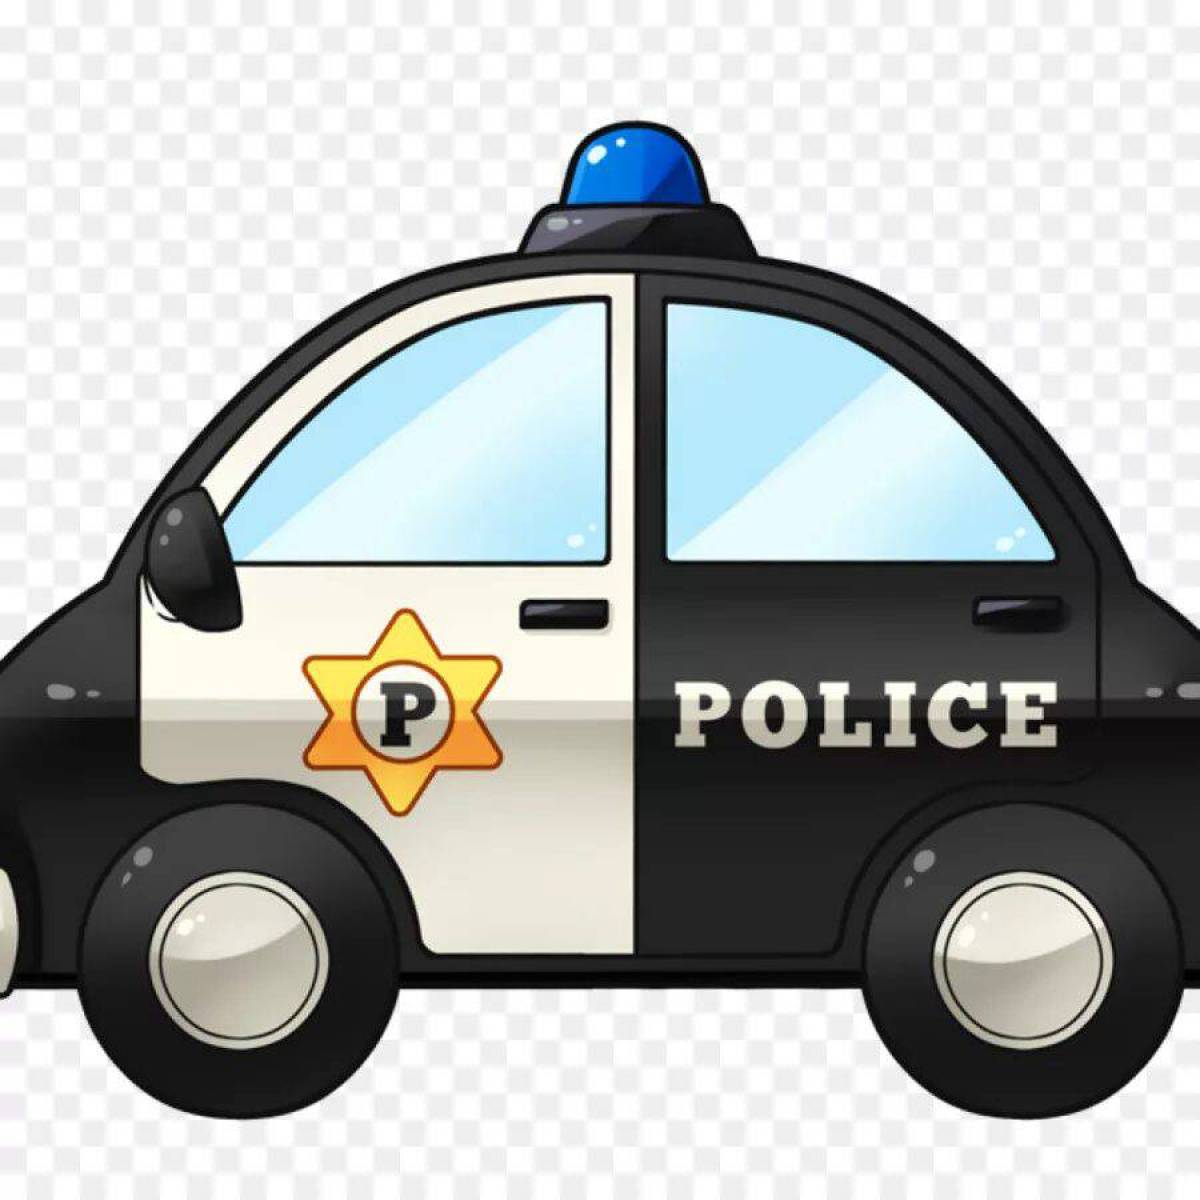 Полицейская машина для малышей #2